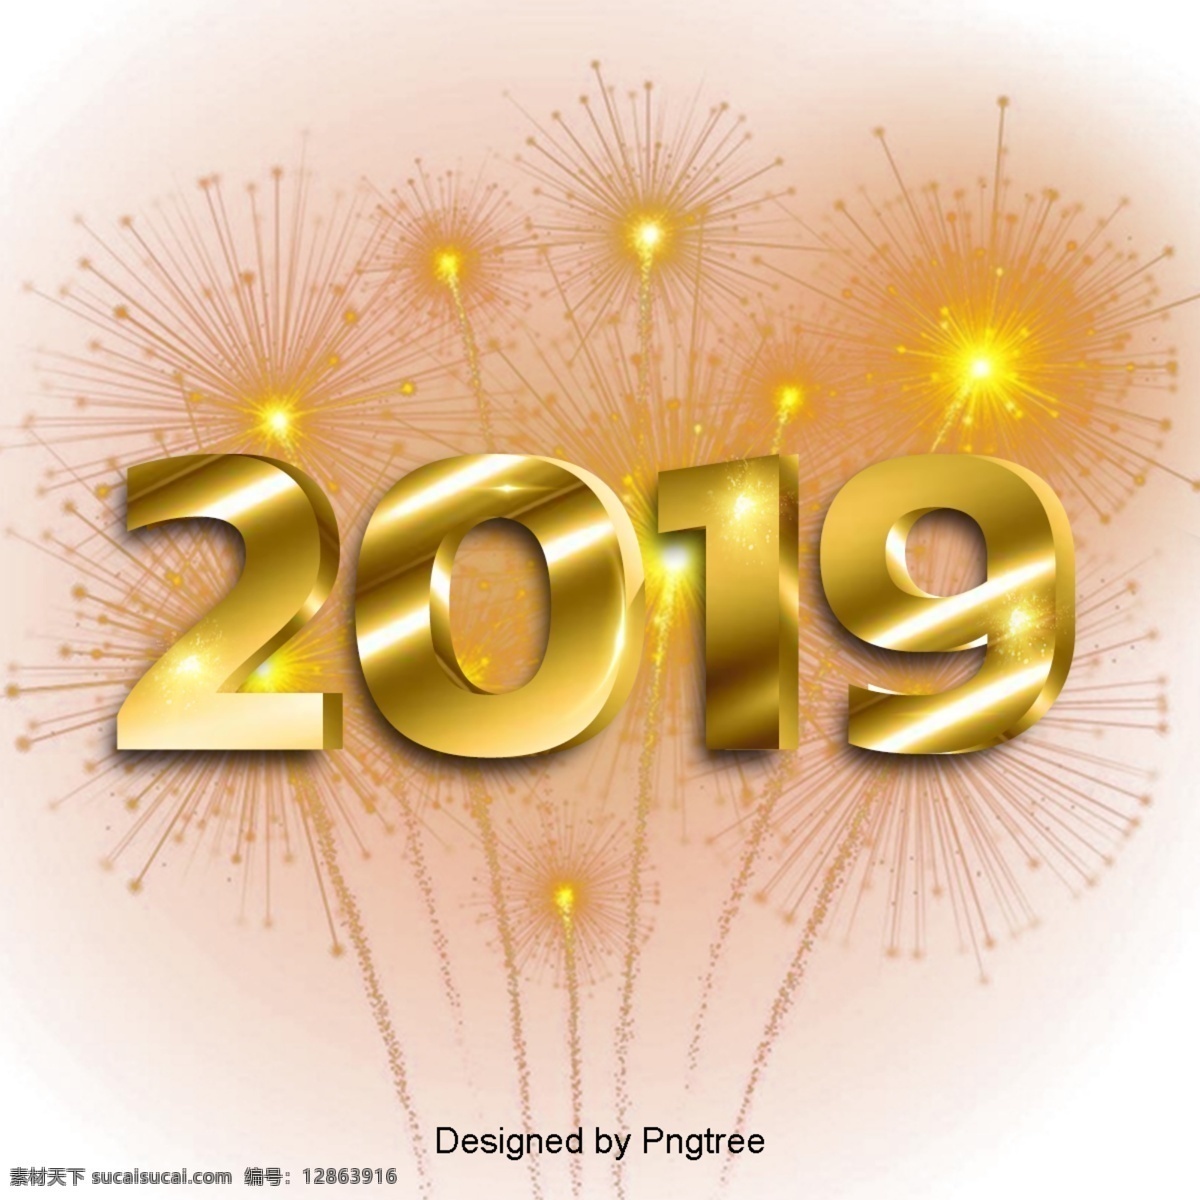 新 年 2019 黄金 令人高兴的 新的一年指南 活泼